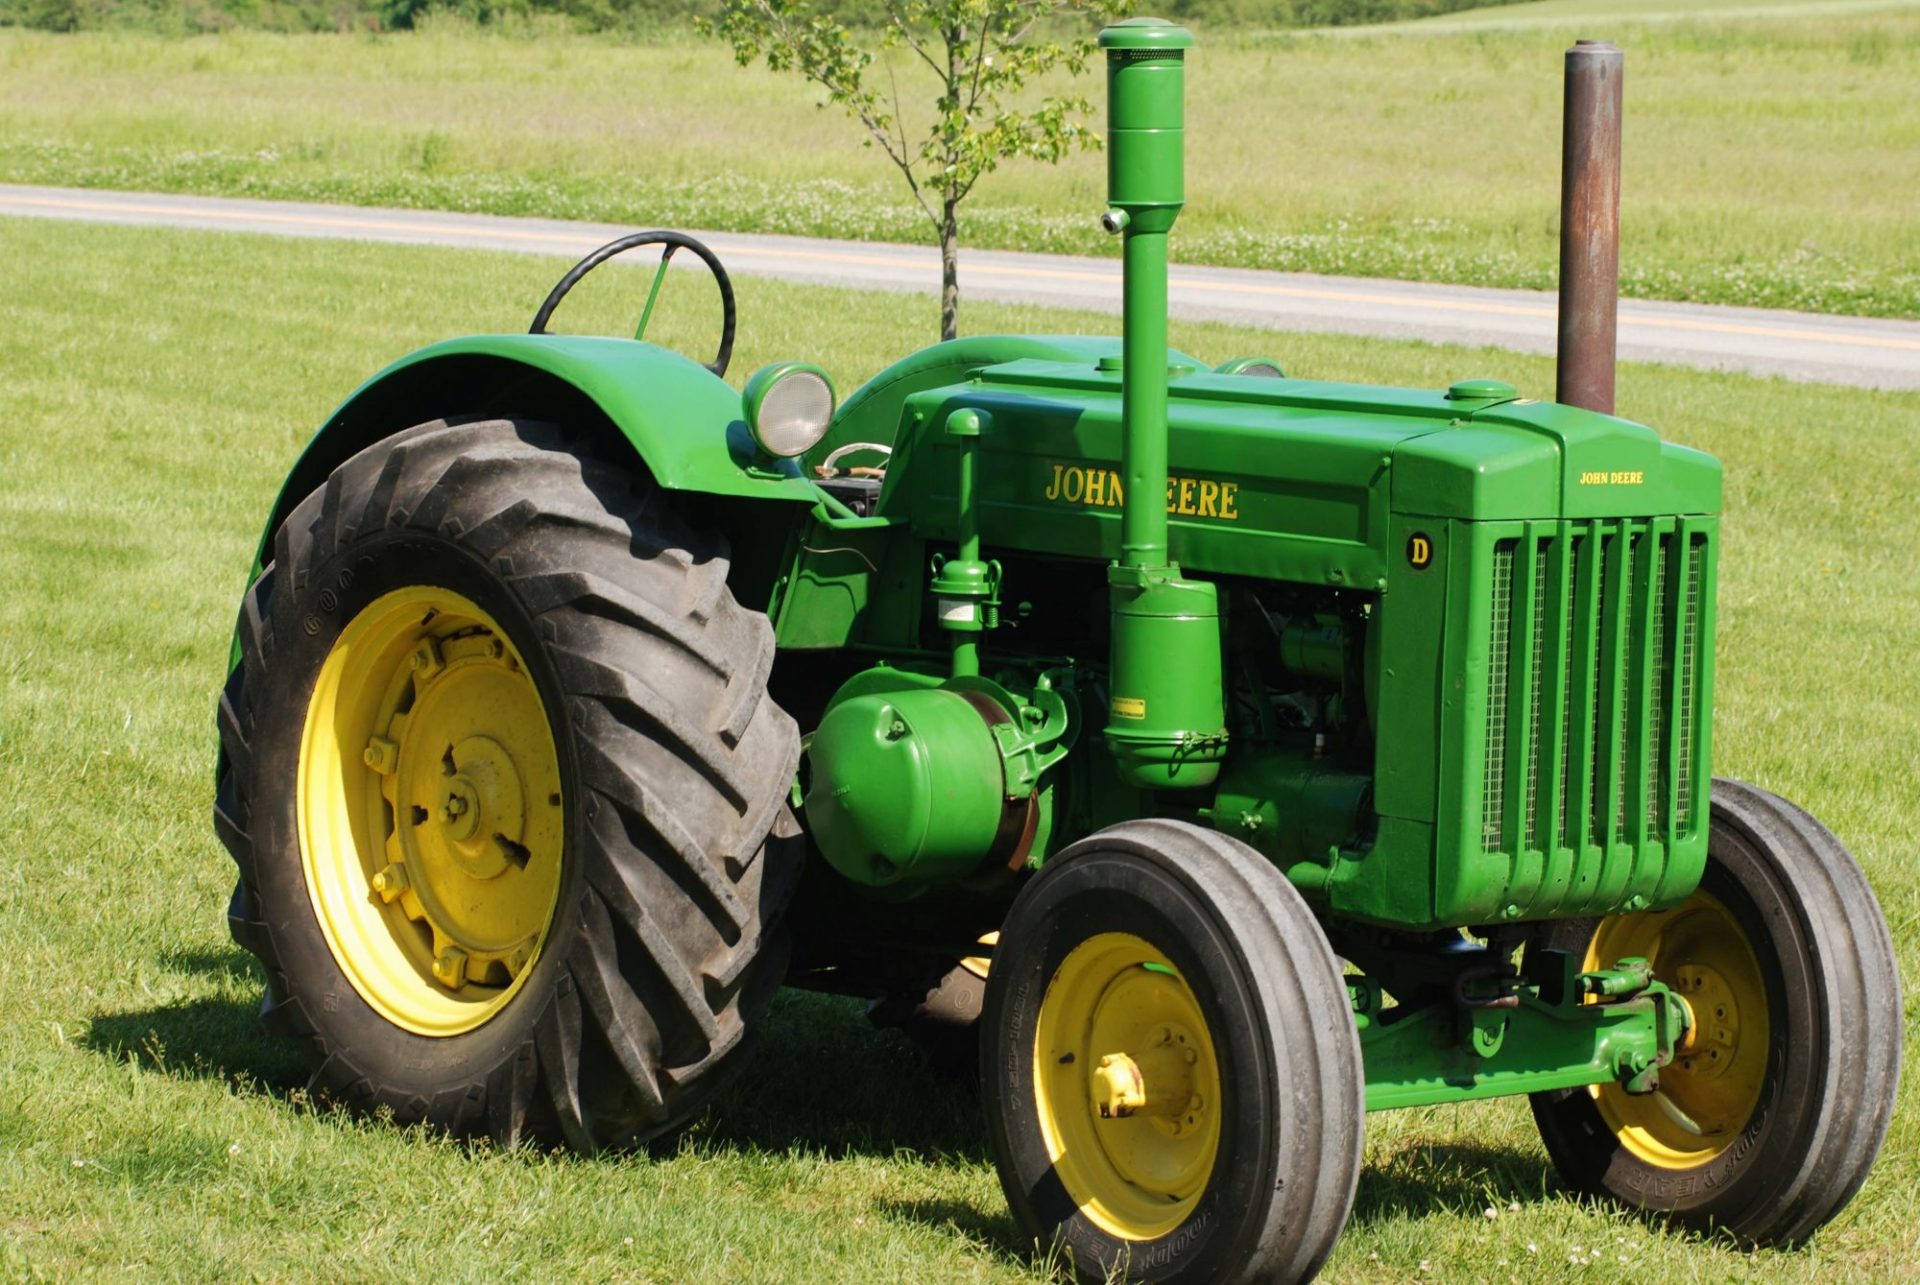 The Top 5 John Deere D Variations Collectors Want Classic Tractor Fever Tv 4989